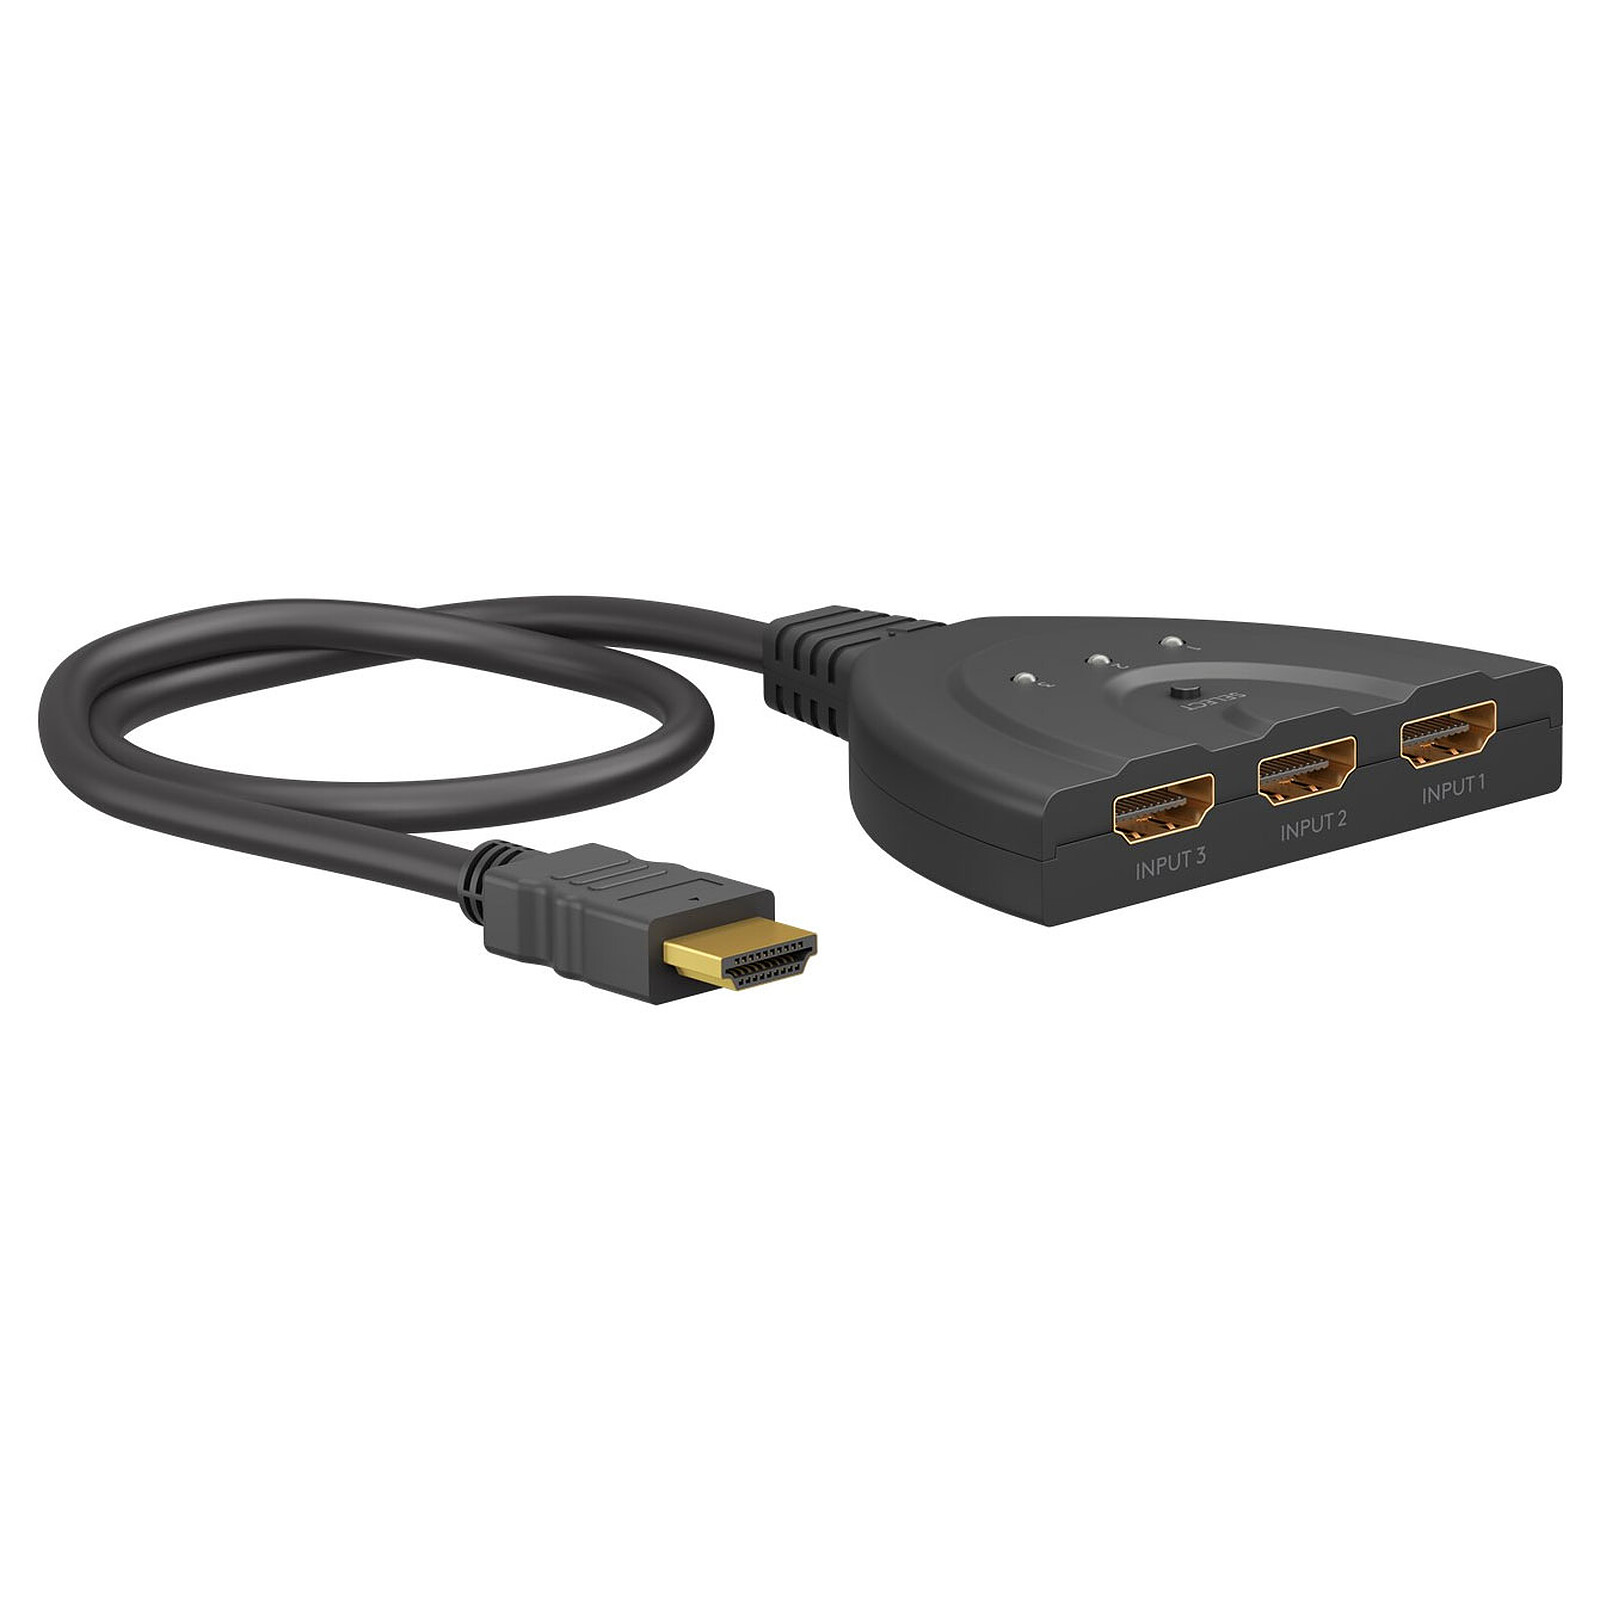 Adaptateur HDMI vers 2 ports HDMI - 20 cm - Câble HDMI Générique